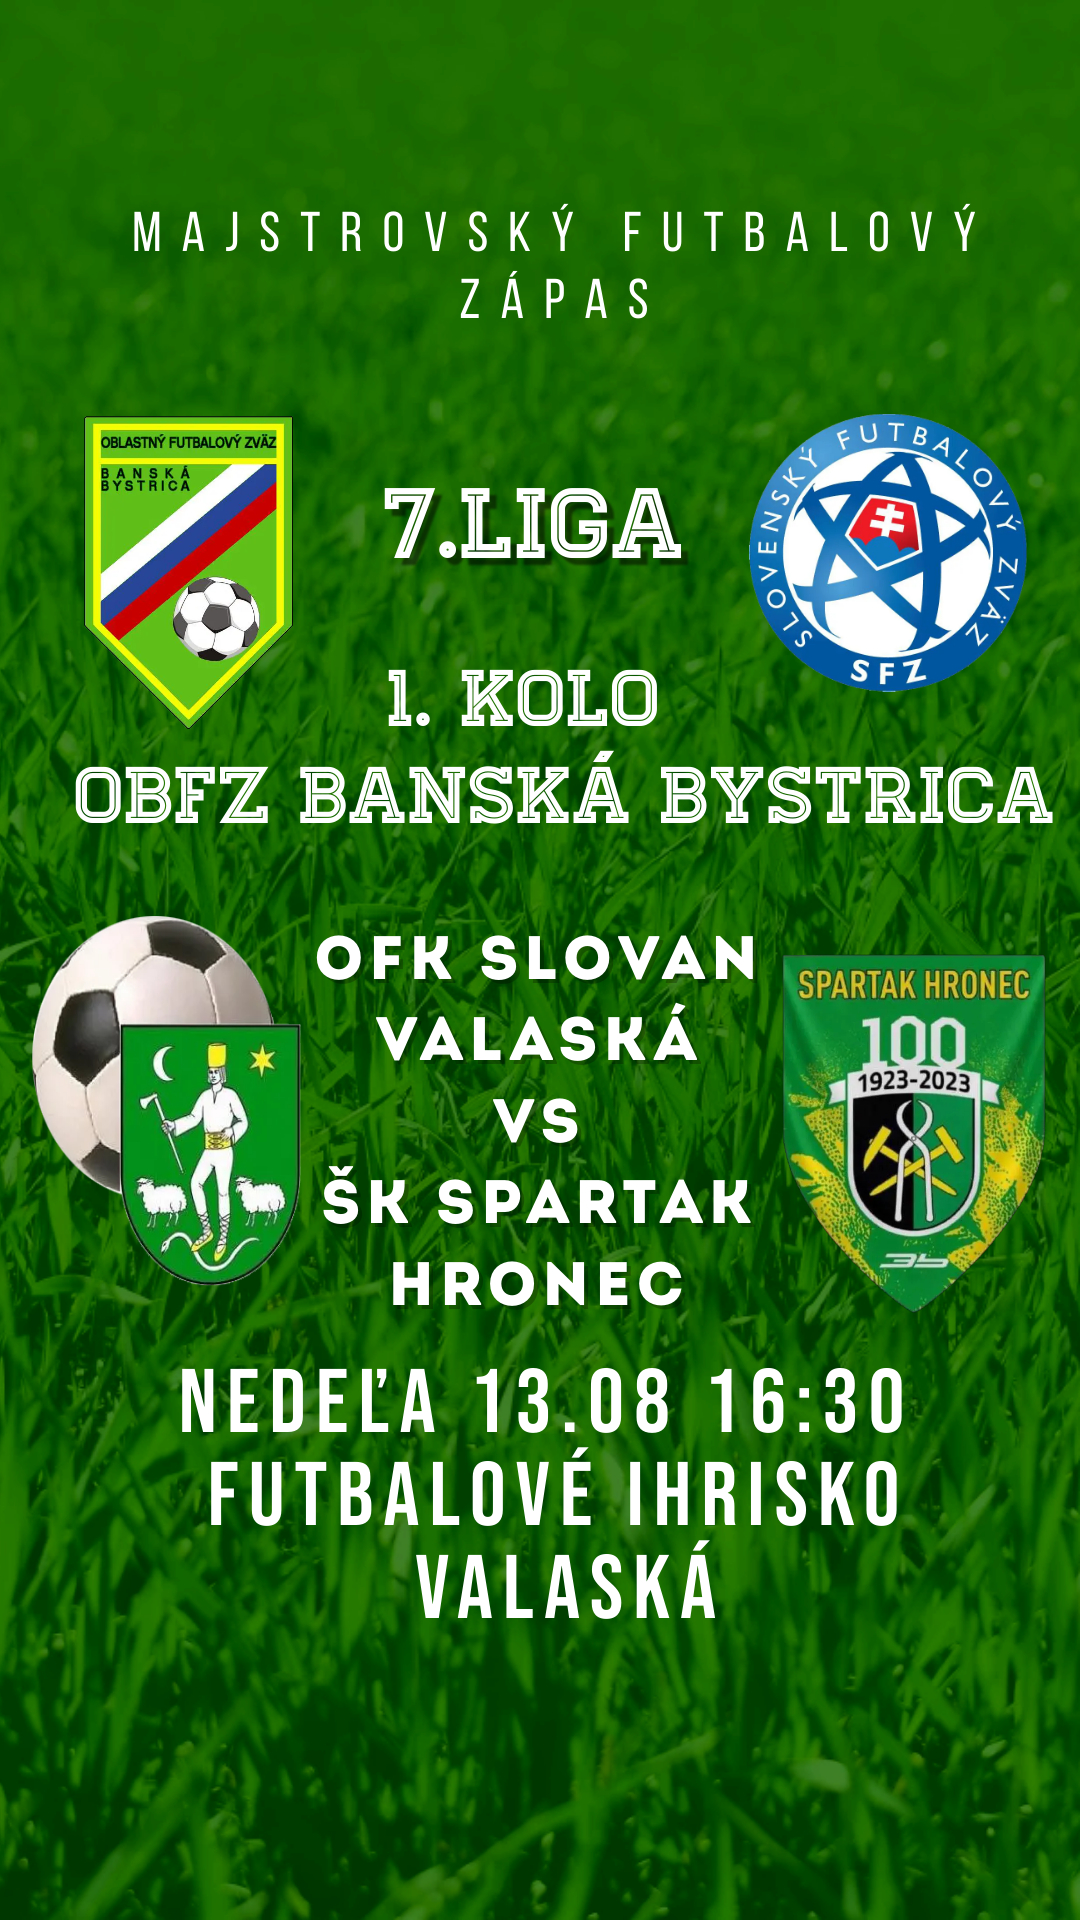 OFK Slovan Valaská